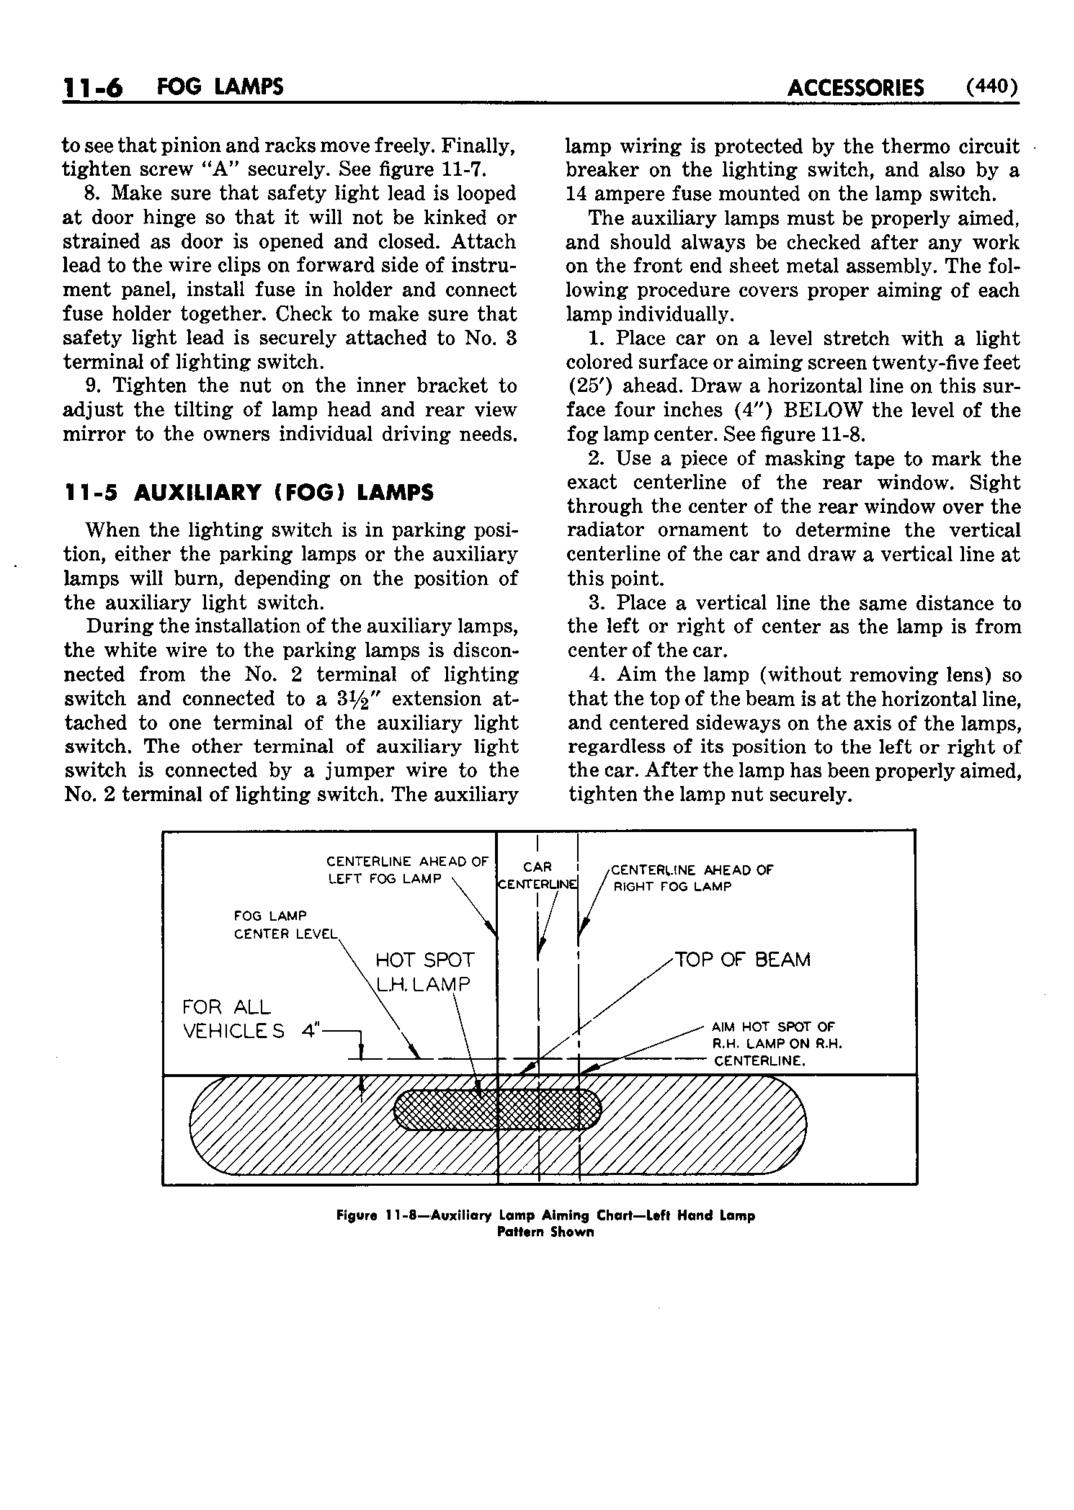 n_12 1952 Buick Shop Manual - Accessories-006-006.jpg